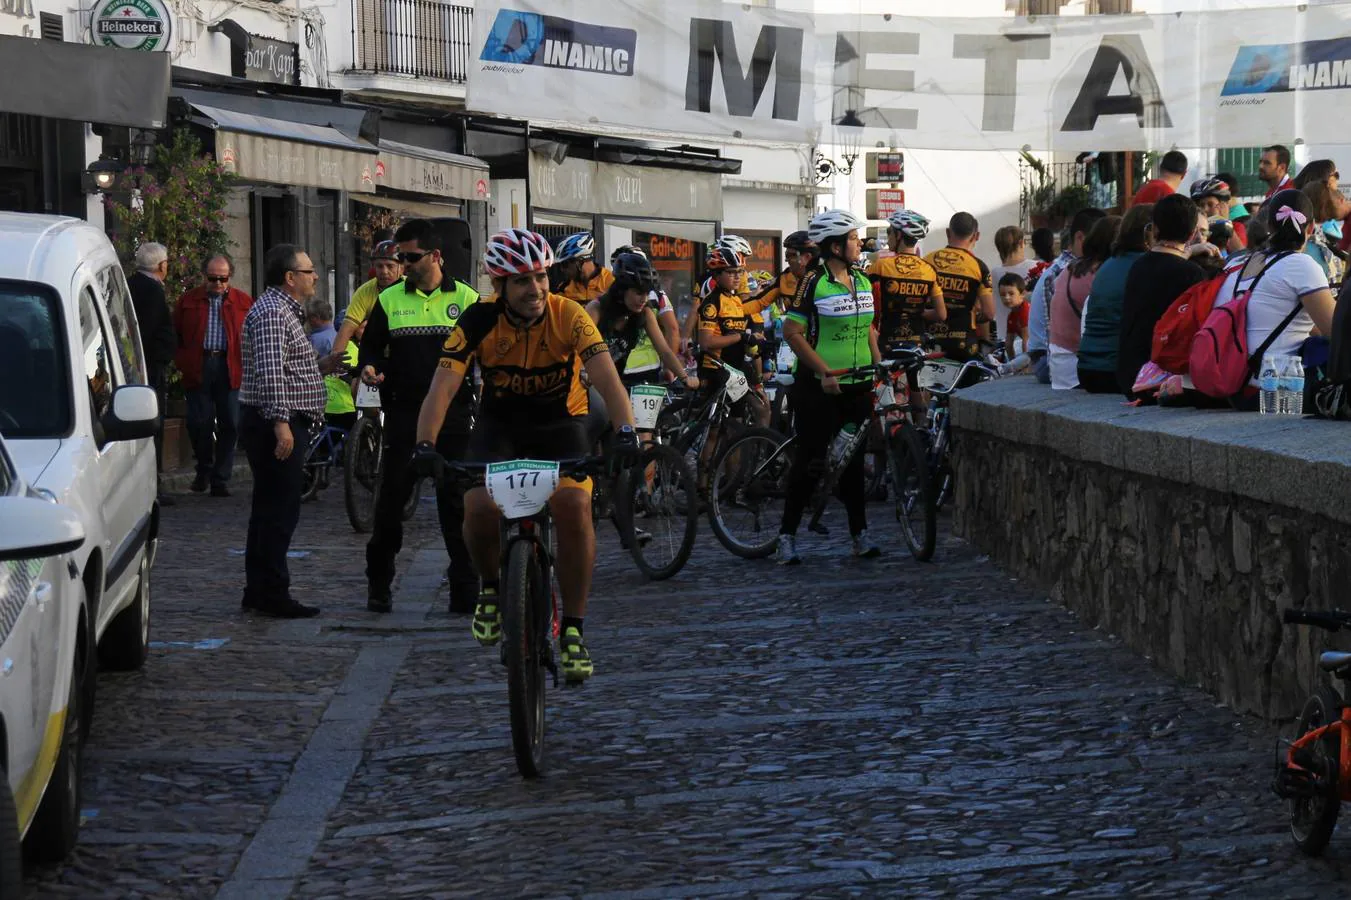 El buen ambiente presidió la celebración del 'Día de la bicleta' en Jerez